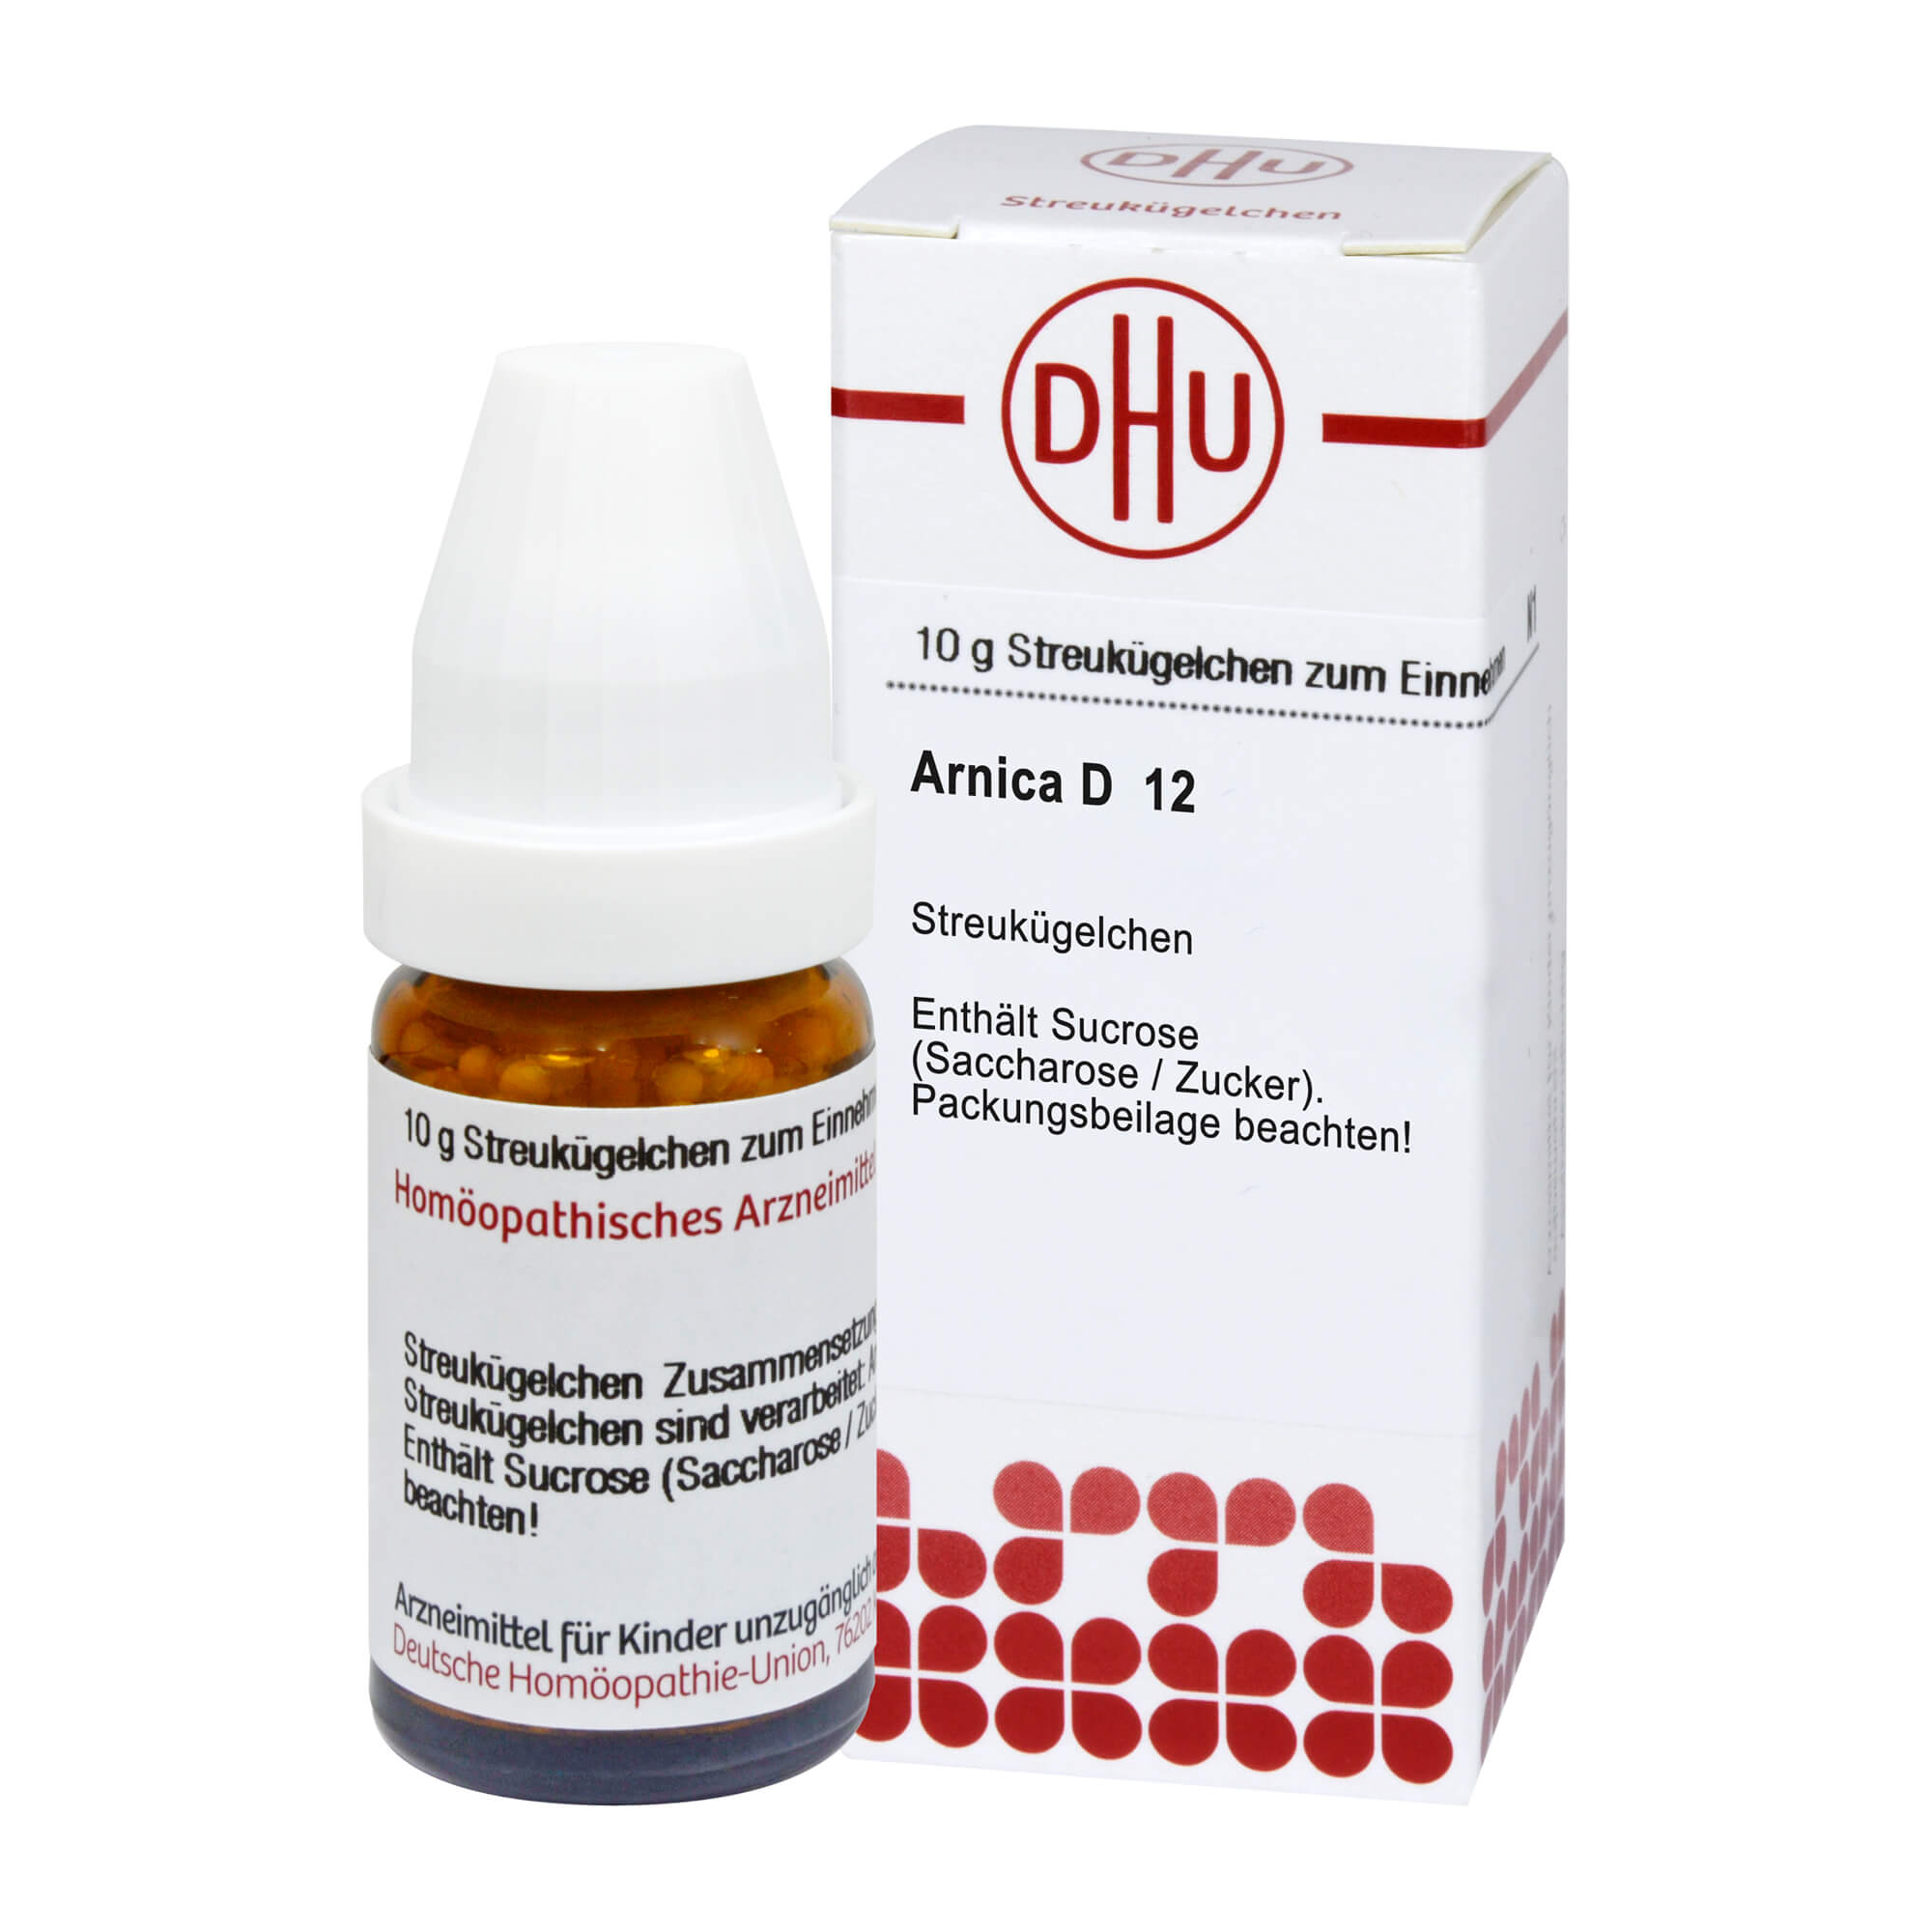 Homöopathisches Arzneimittel mit Arnica Dil. D12.